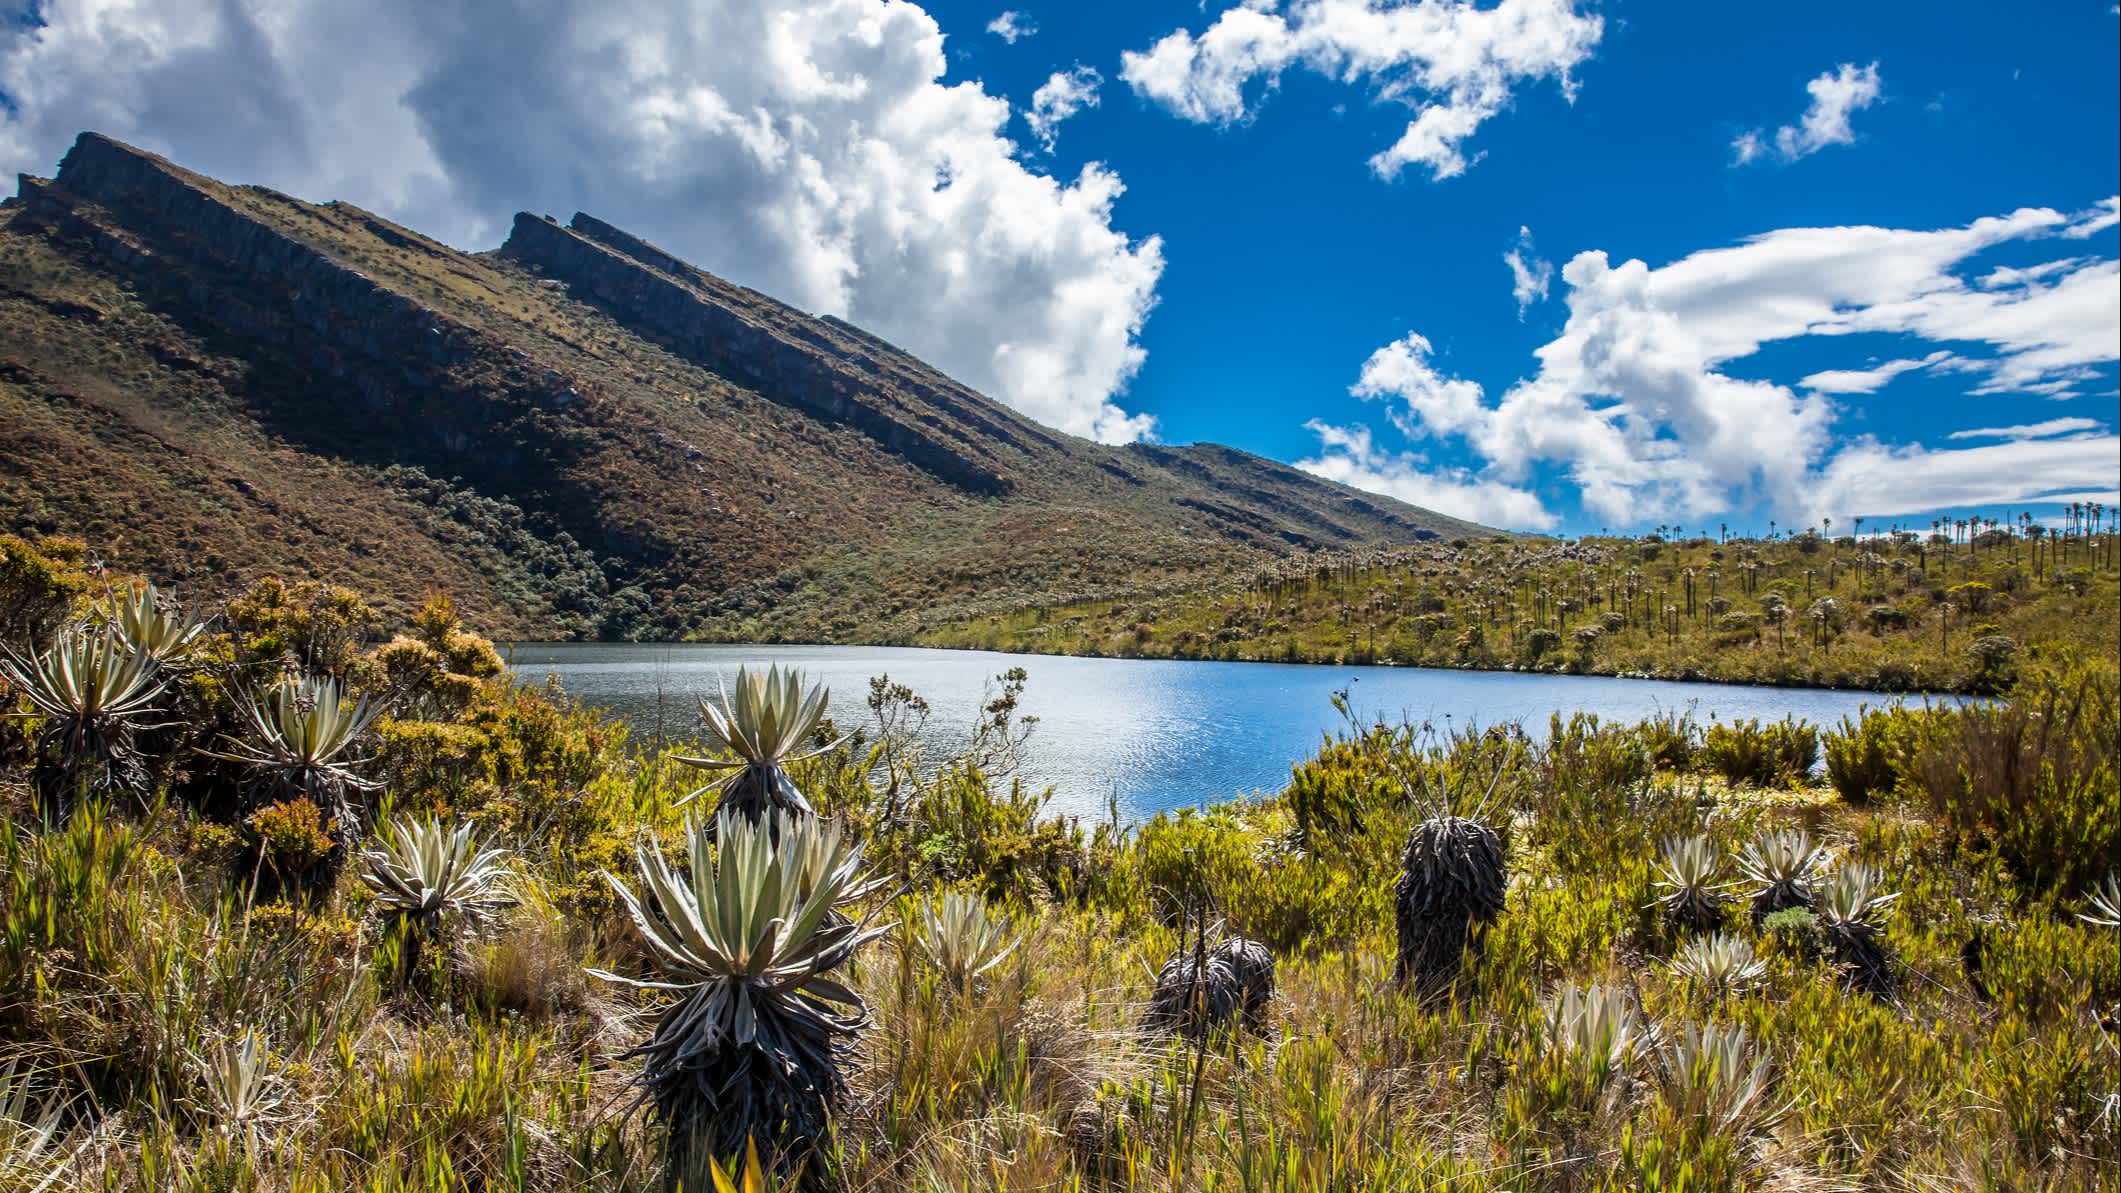 Schöne Landschaft der kolumbianischen Anden mit Paramo-Vegetation